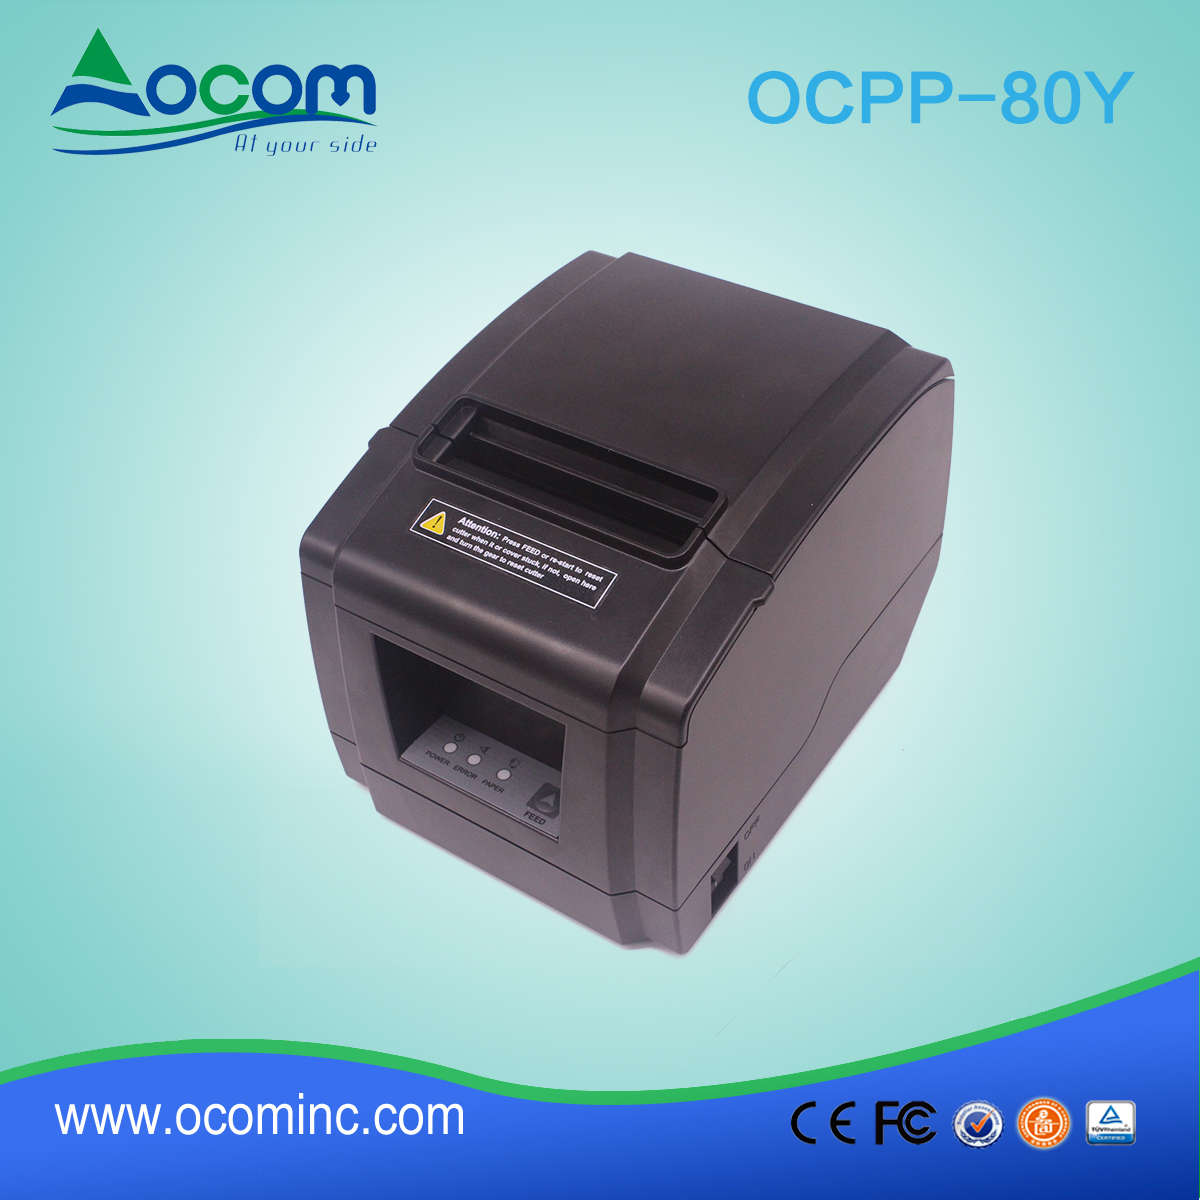 OCPP-80Y-U Novo modelo de impressora de recebimento térmico de 80 mm com porta USB Auto Cutter